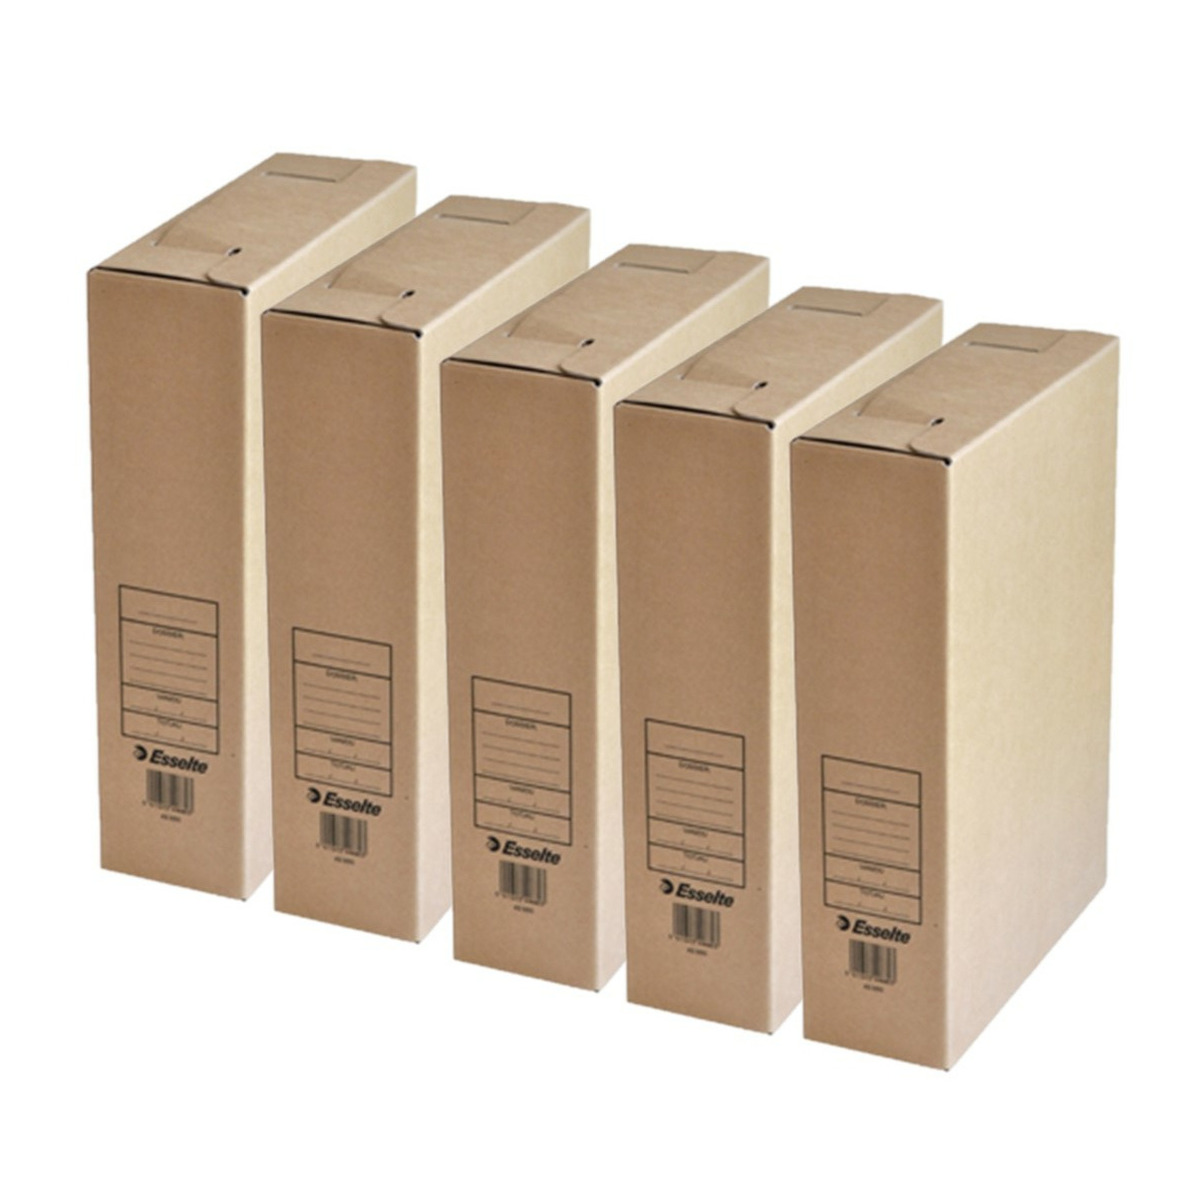 Kantoor archiefdoos 10x karton bruin 23 x 32 cm A4 formaat kantoor artikelen